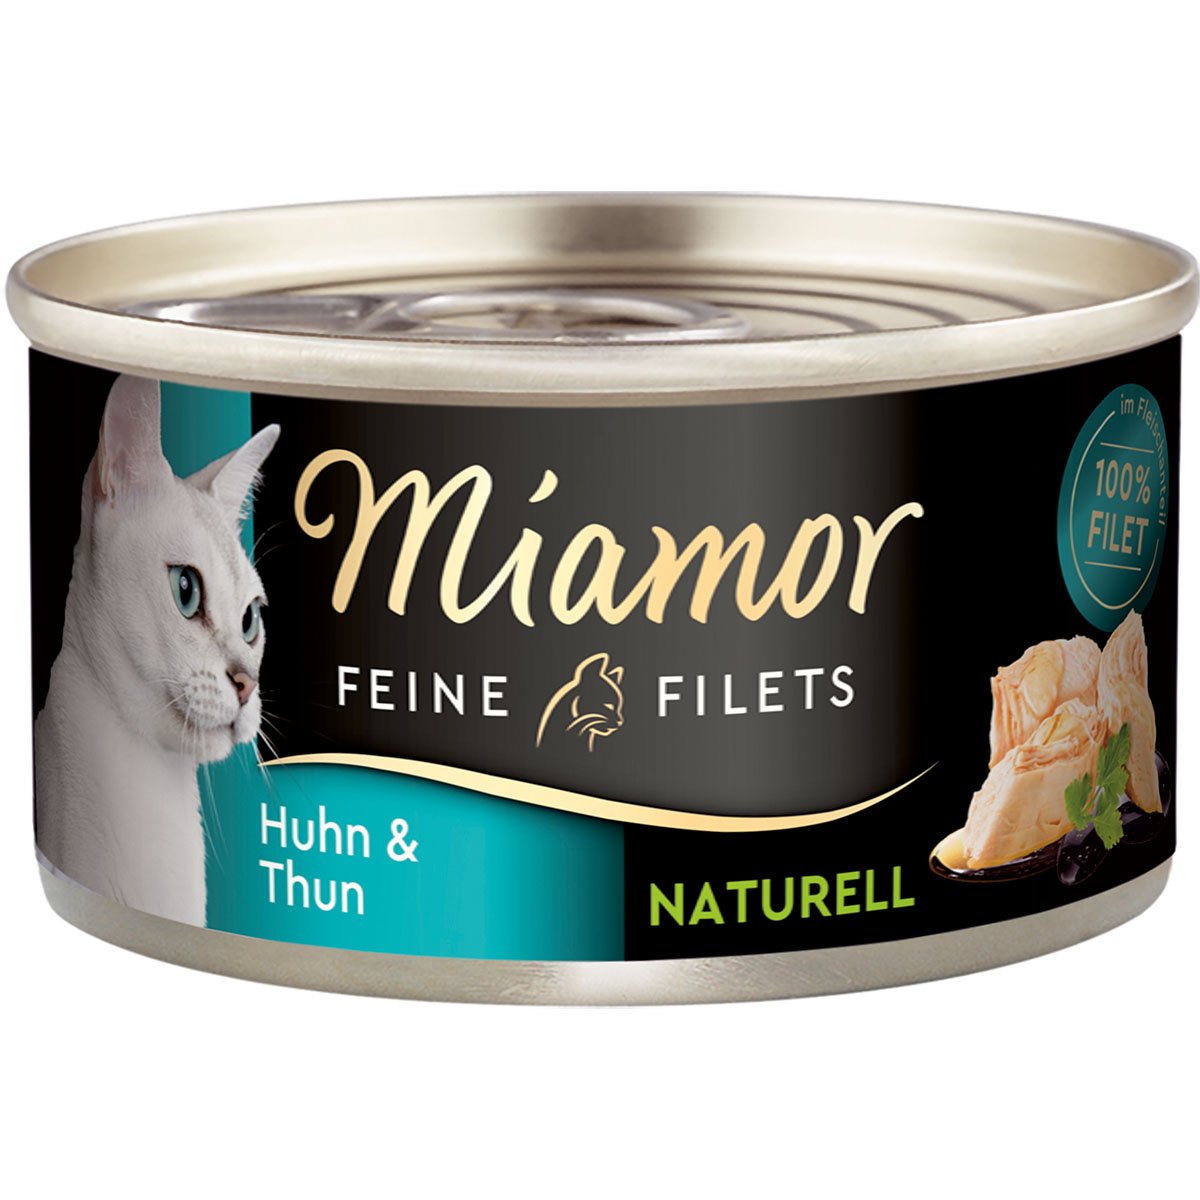 Miamor Feine Filets Naturelle Huhn und Thunfisch 80g Dose 24x80g